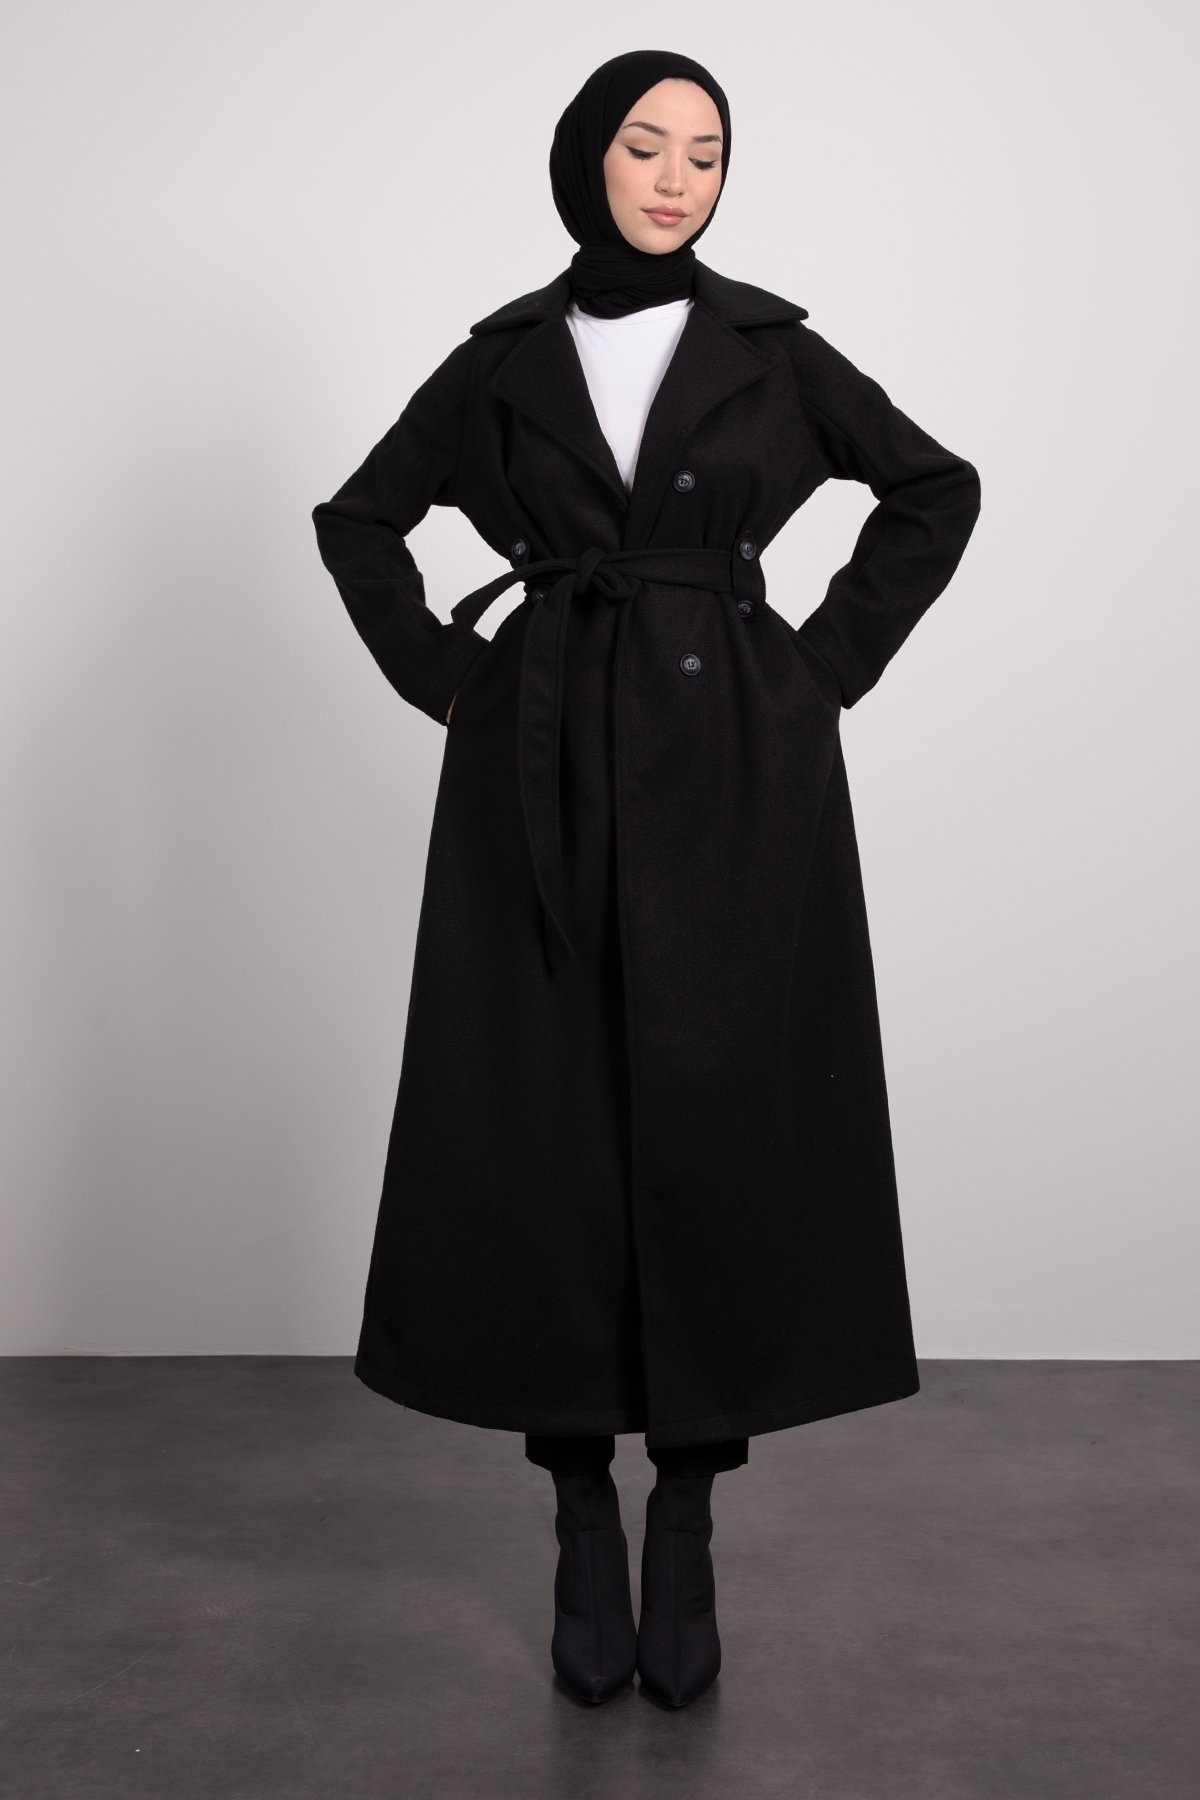 Klasik Model Ceket Yaka Uzun Tesettür Kaşe Kaban Siyah